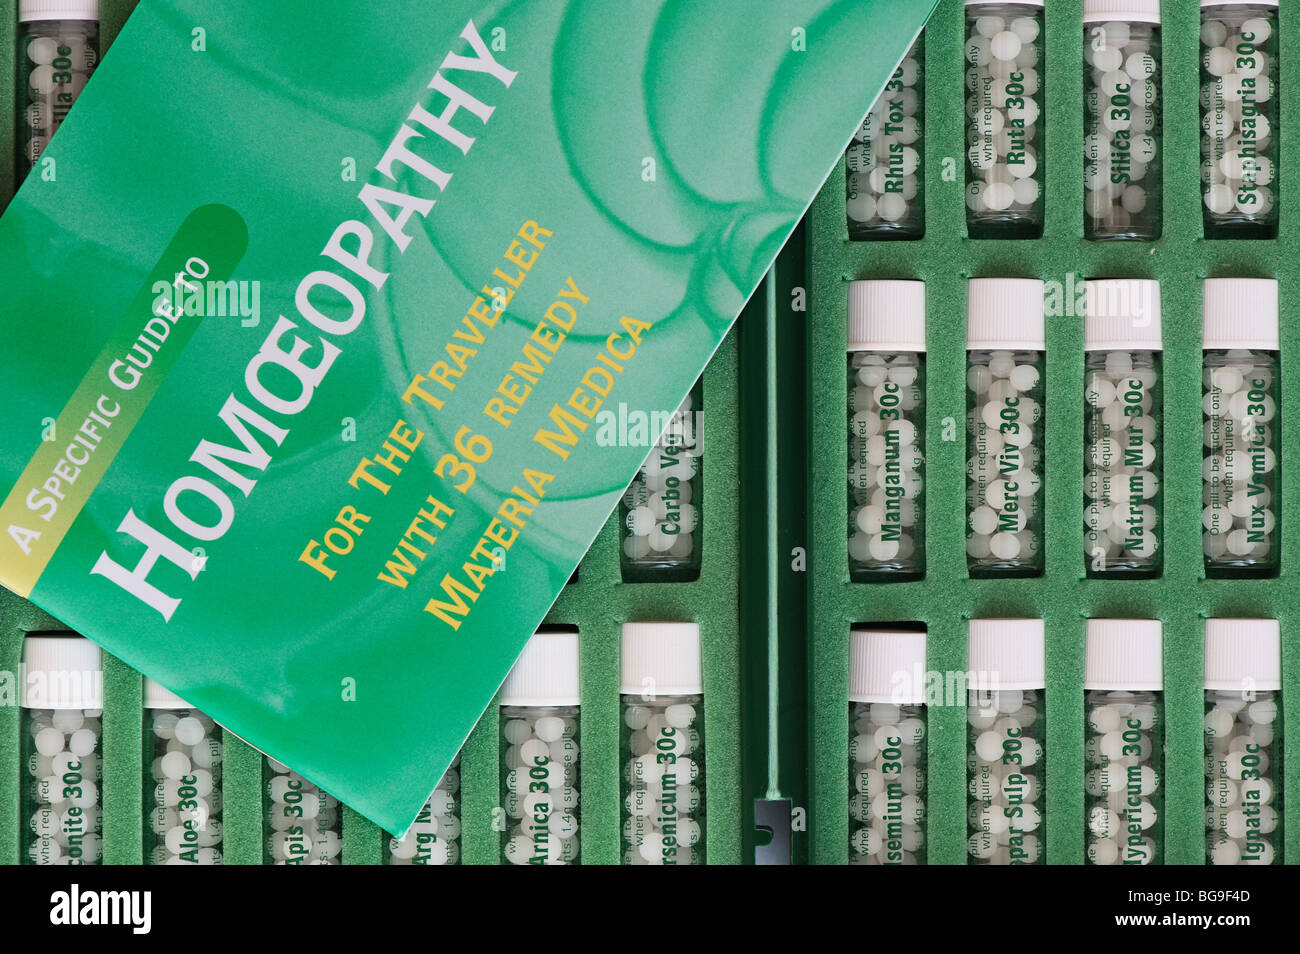 Botellas de remedio homeopático píldoras en un estuche de viaje. La India Foto de stock